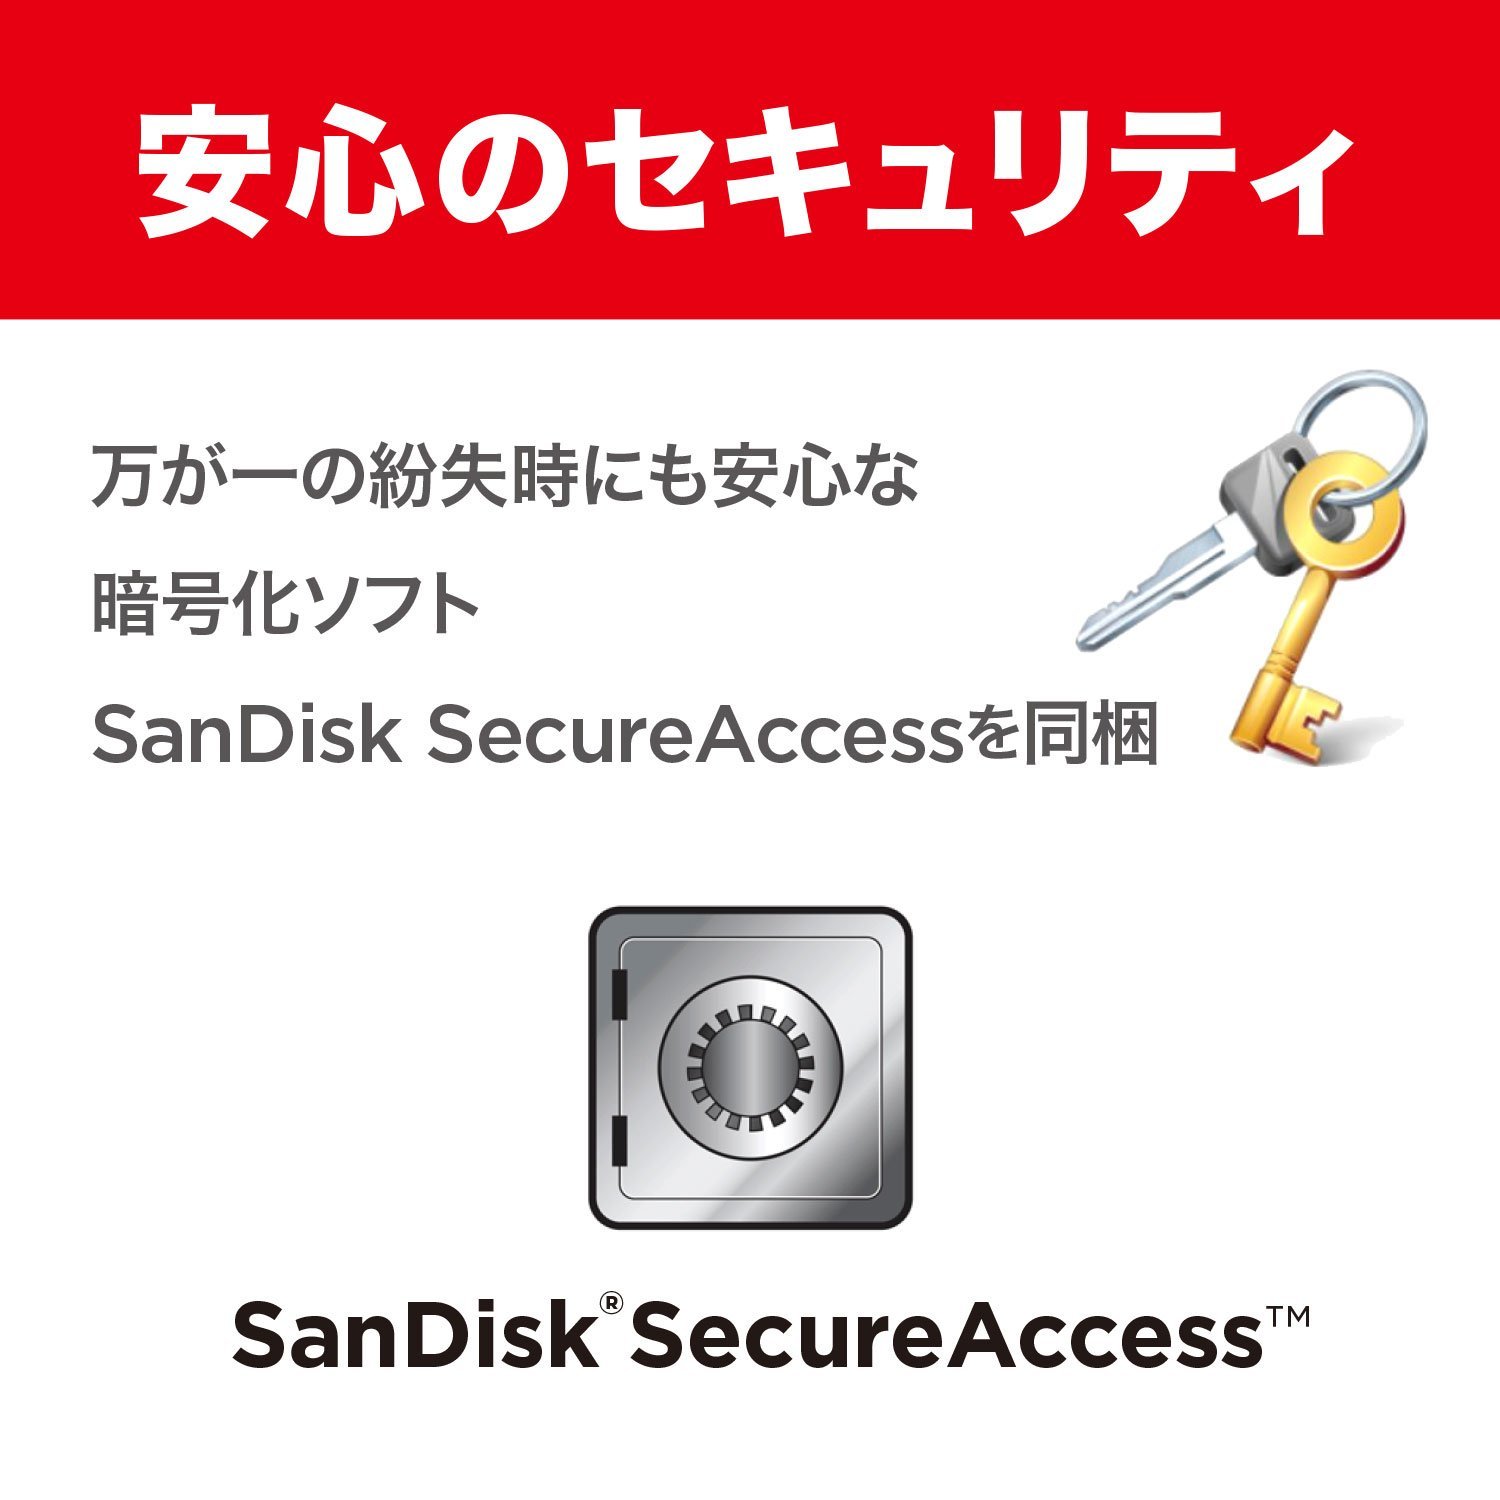 【SanDisk】フラッシュメモリー 32GB